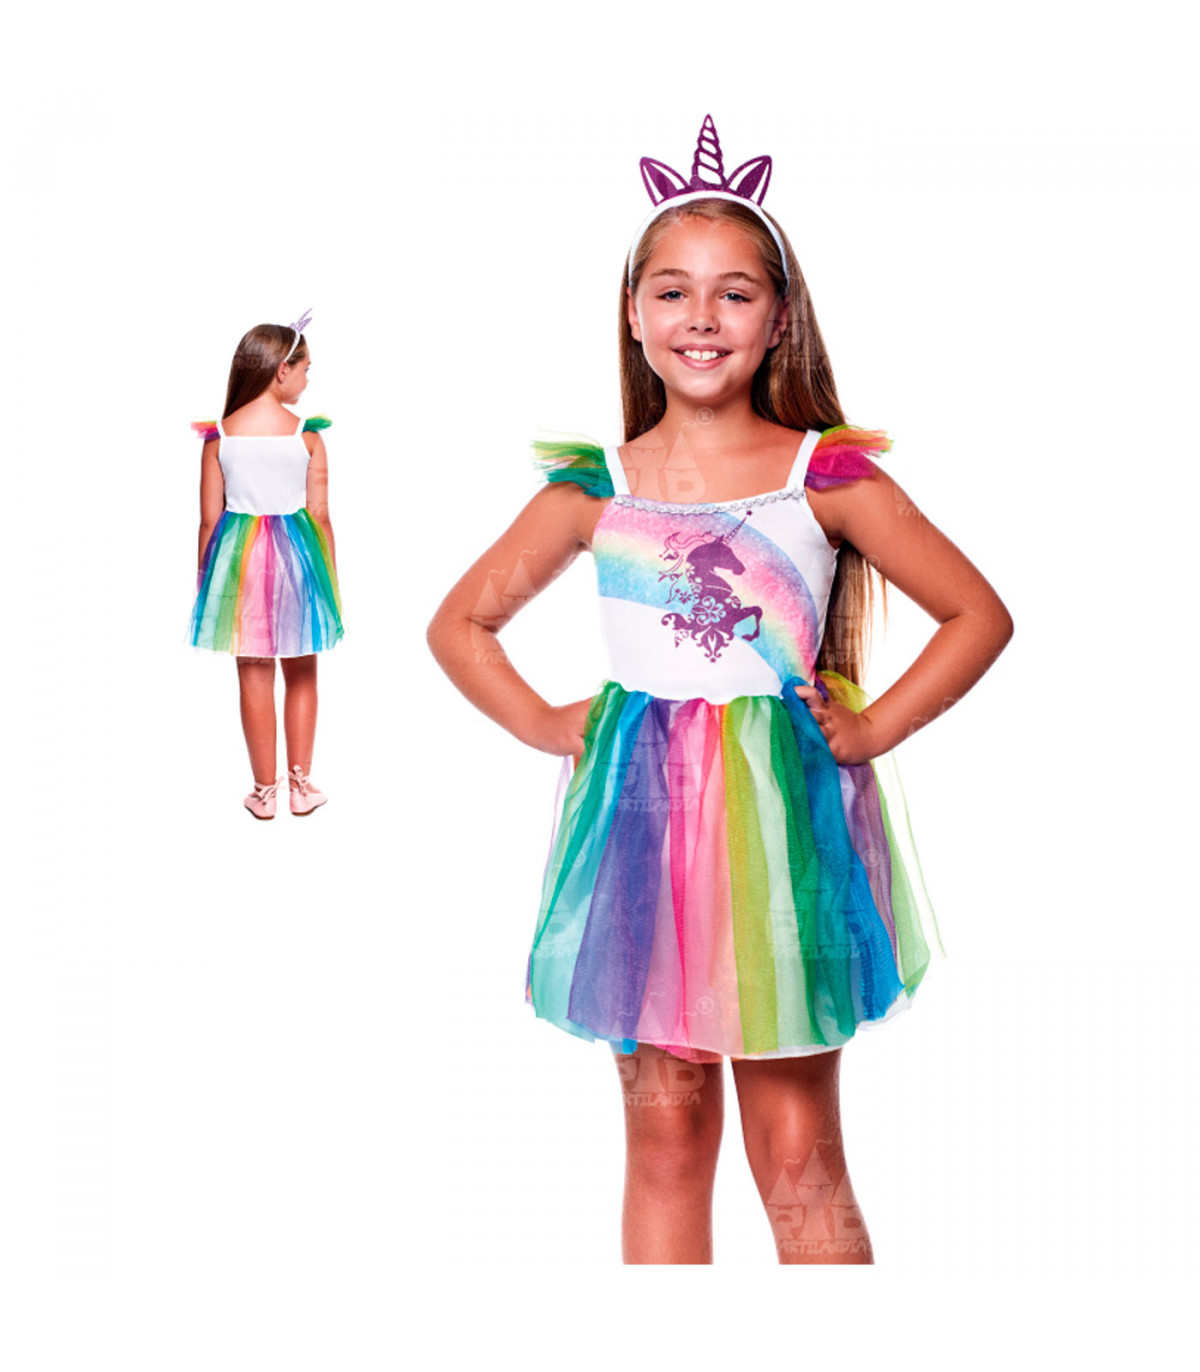 https://tradineur.com/40345-superlarge_default/disfraz-de-unicornio-nina-fibra-sintetica-incluye-vestido-y-diadema-carnaval-halloween-cosplay-fiestas-infantil-7-9-anos.jpg